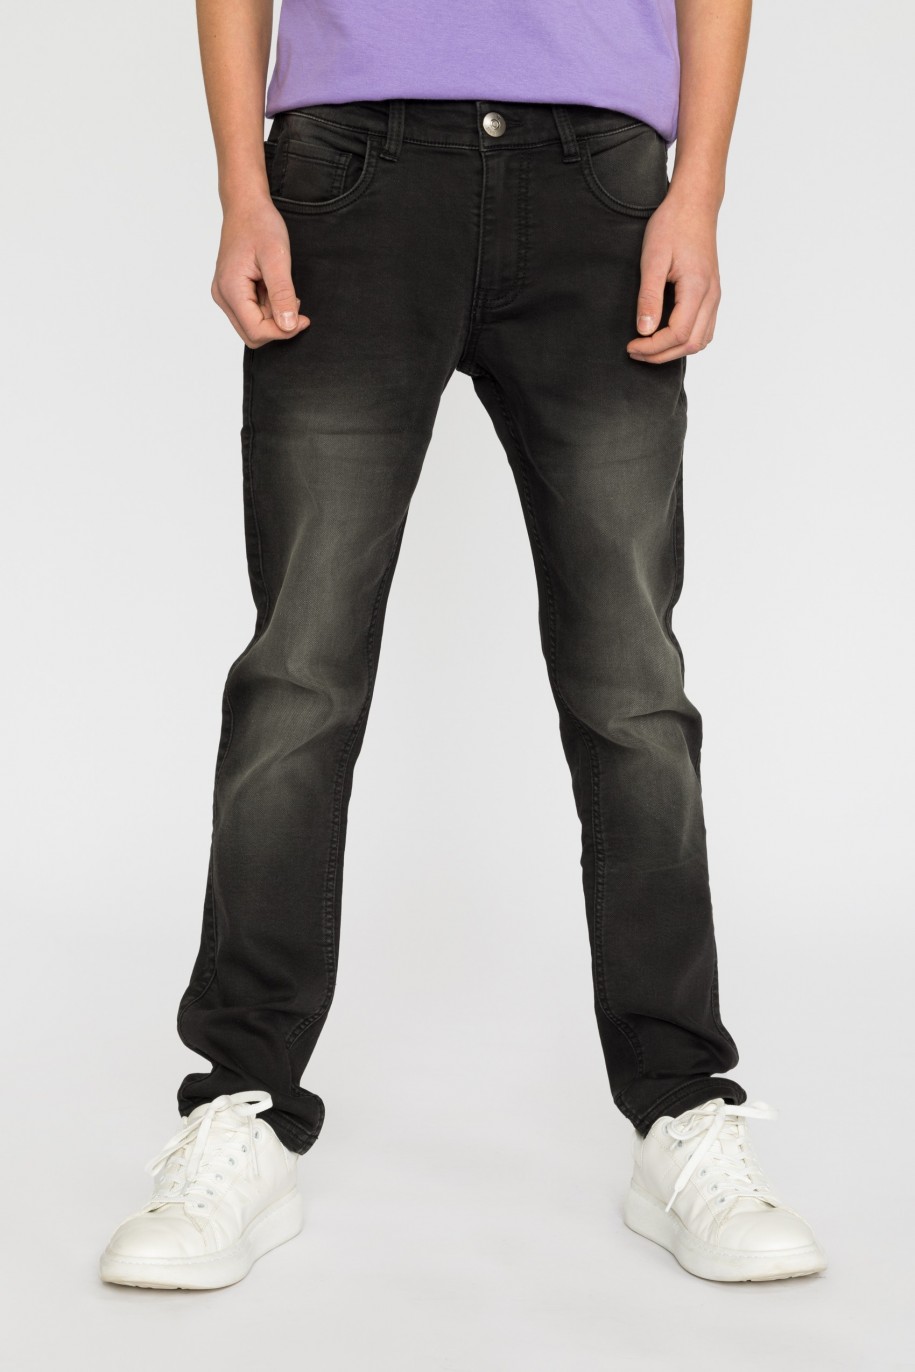 Czarne jeansowe spodnie dla chłopaka - 32097